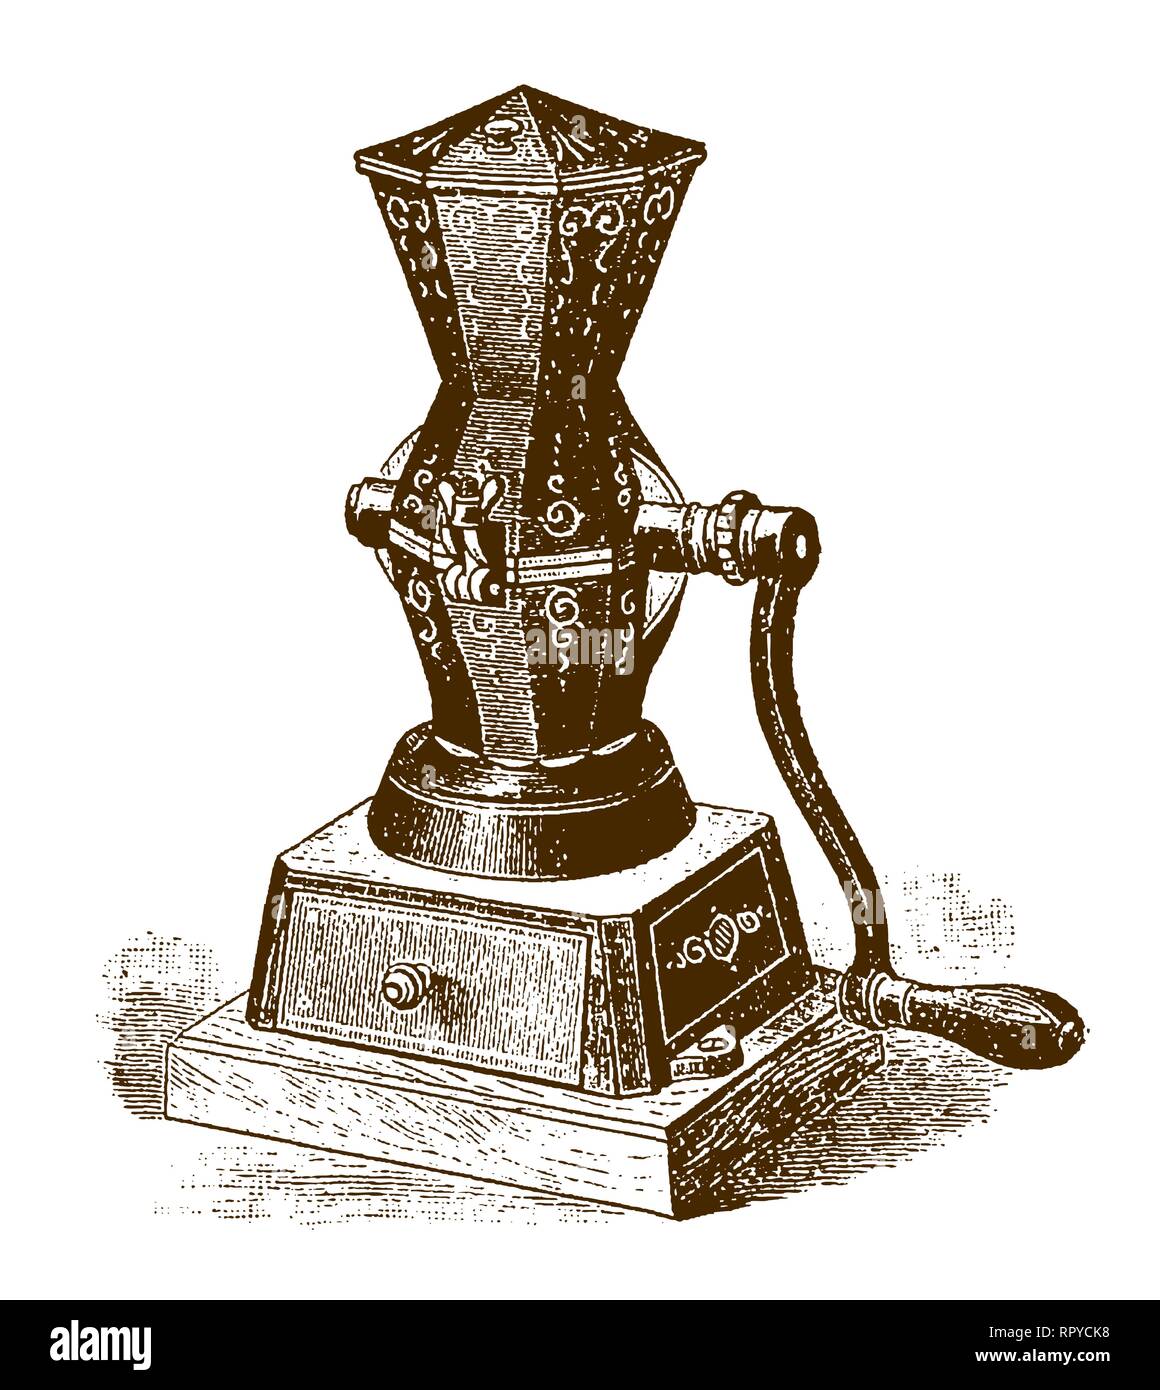 Storico Caffè meccanica e spice grinder (dopo un attacco o incisione del XIX secolo) Illustrazione Vettoriale